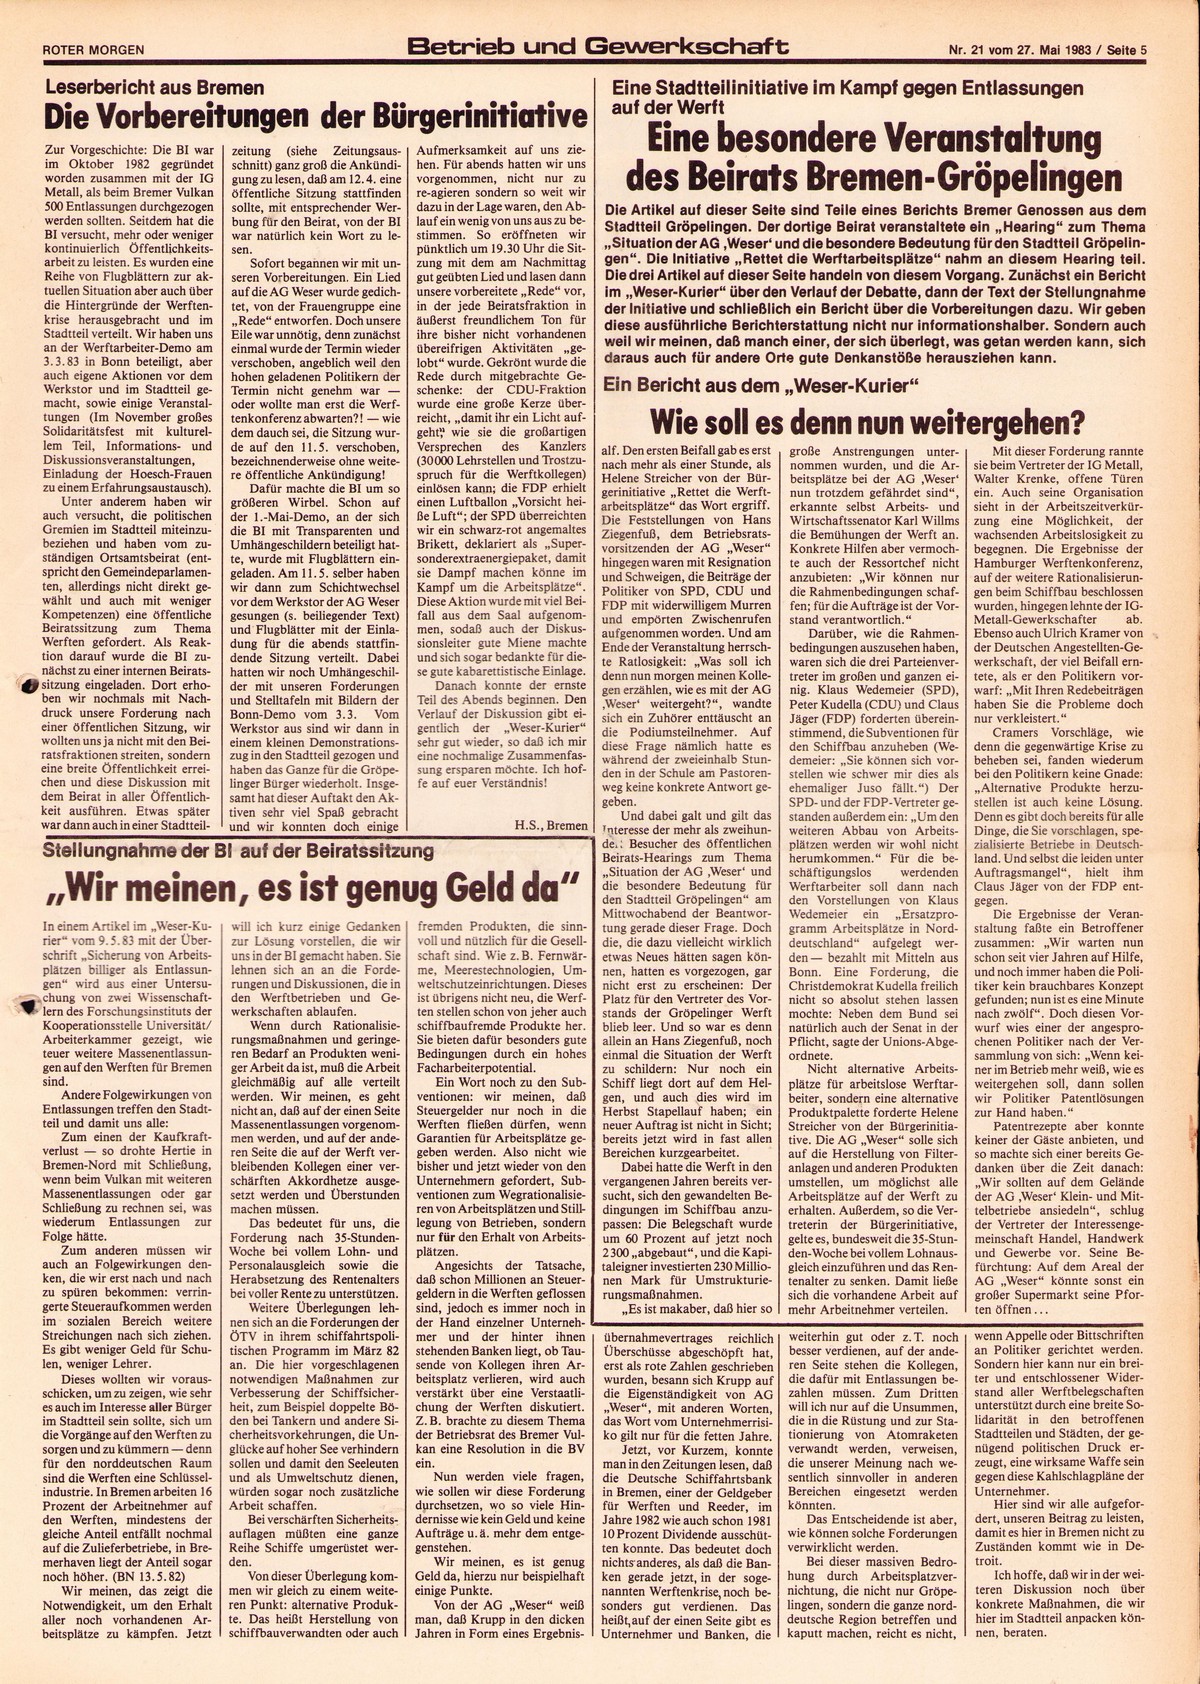 Roter Morgen, 17. Jg., 27. Mai 1983, Nr. 21, Seite 5